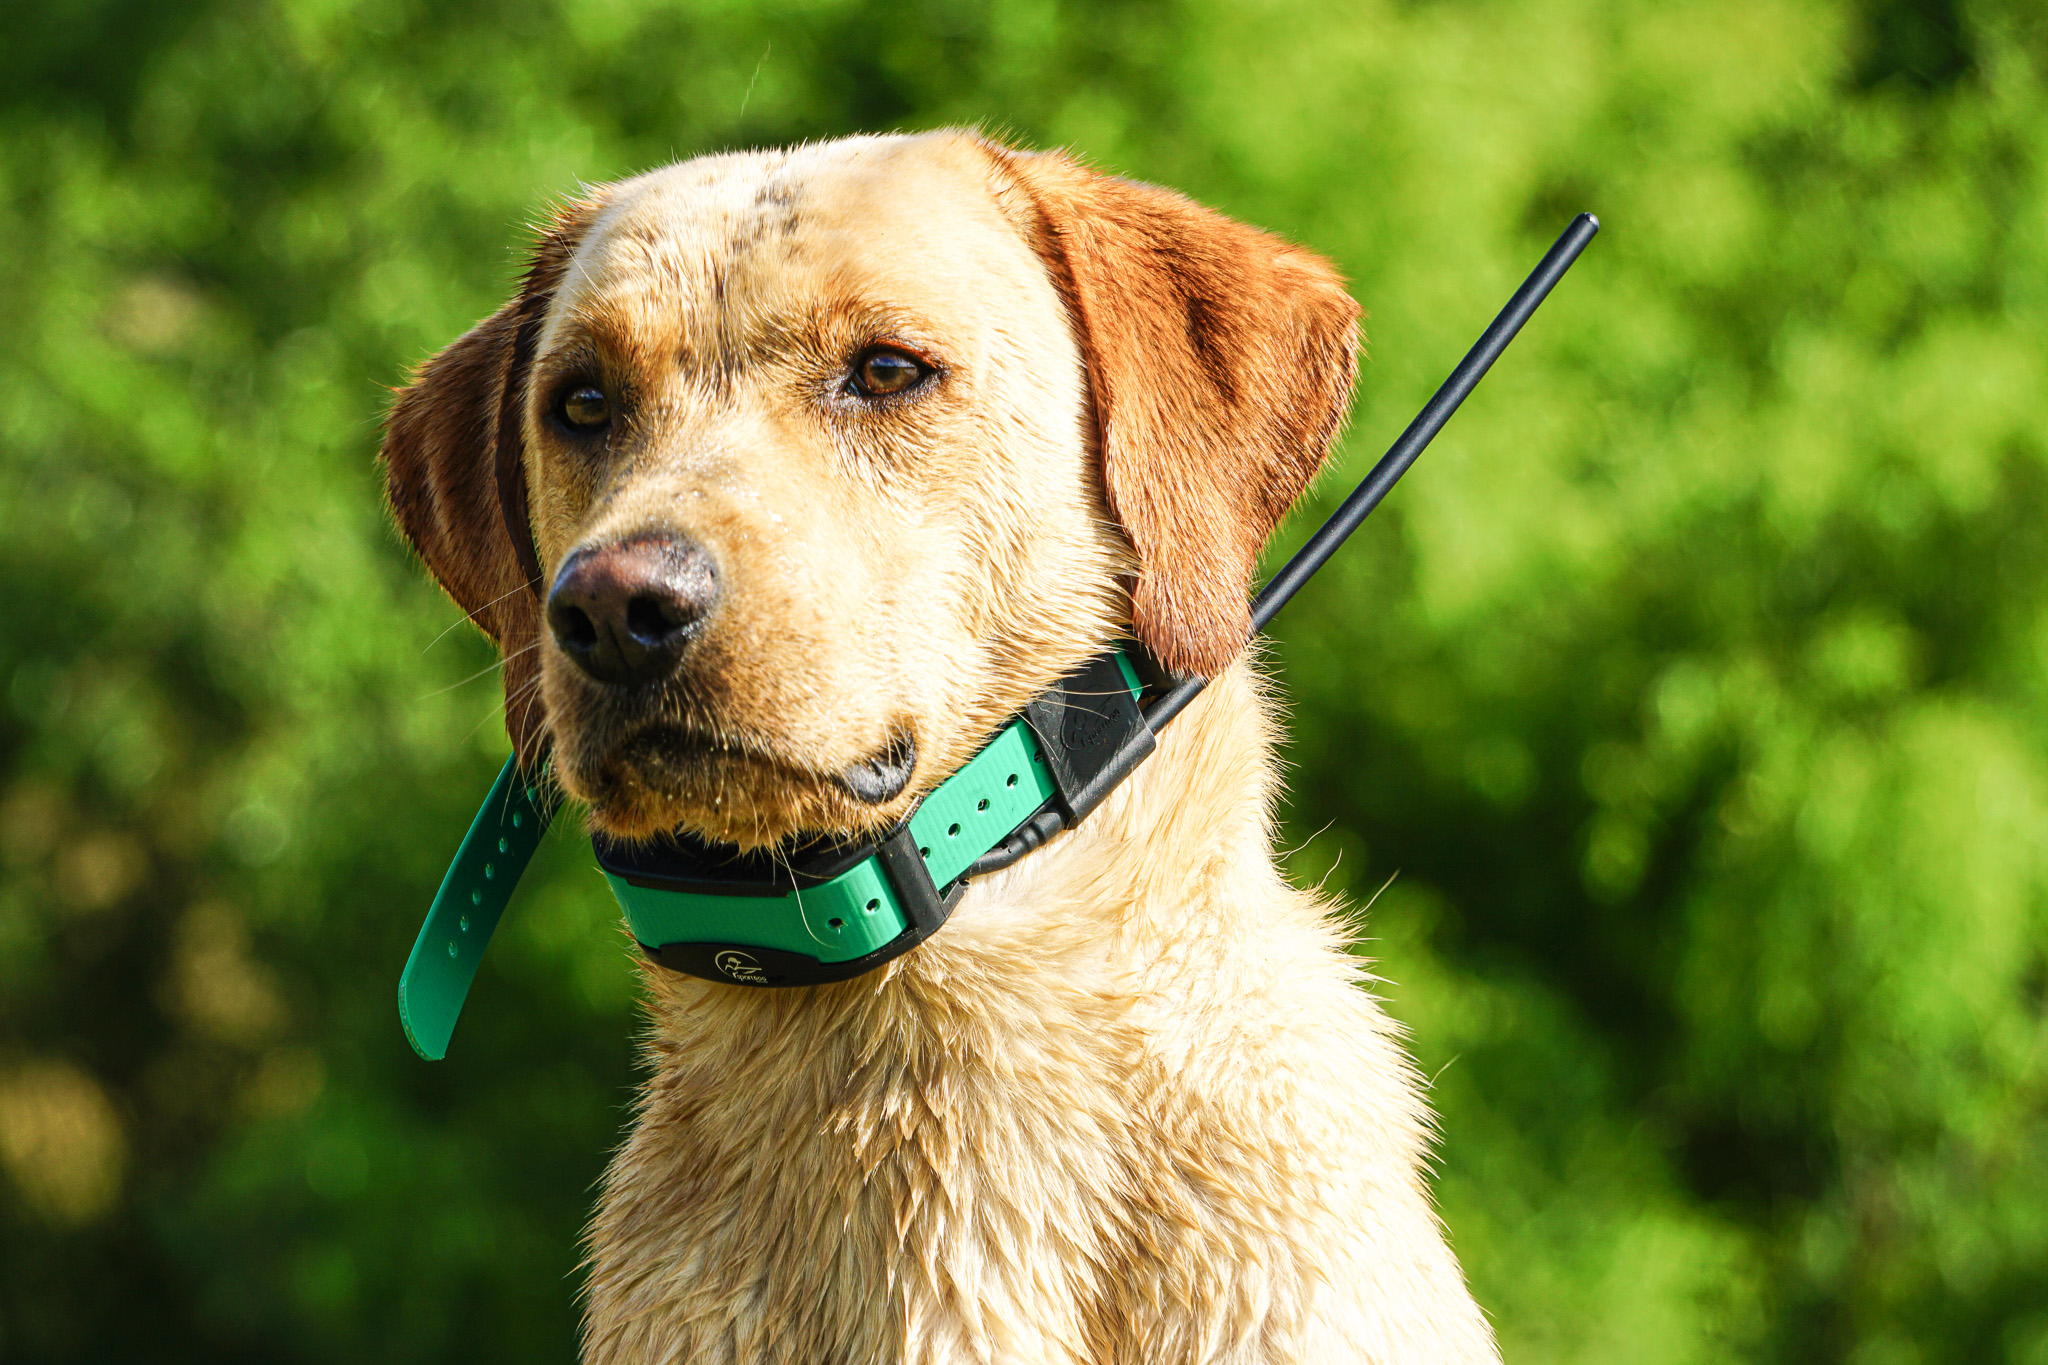 A dog wearing a gps dog collar.